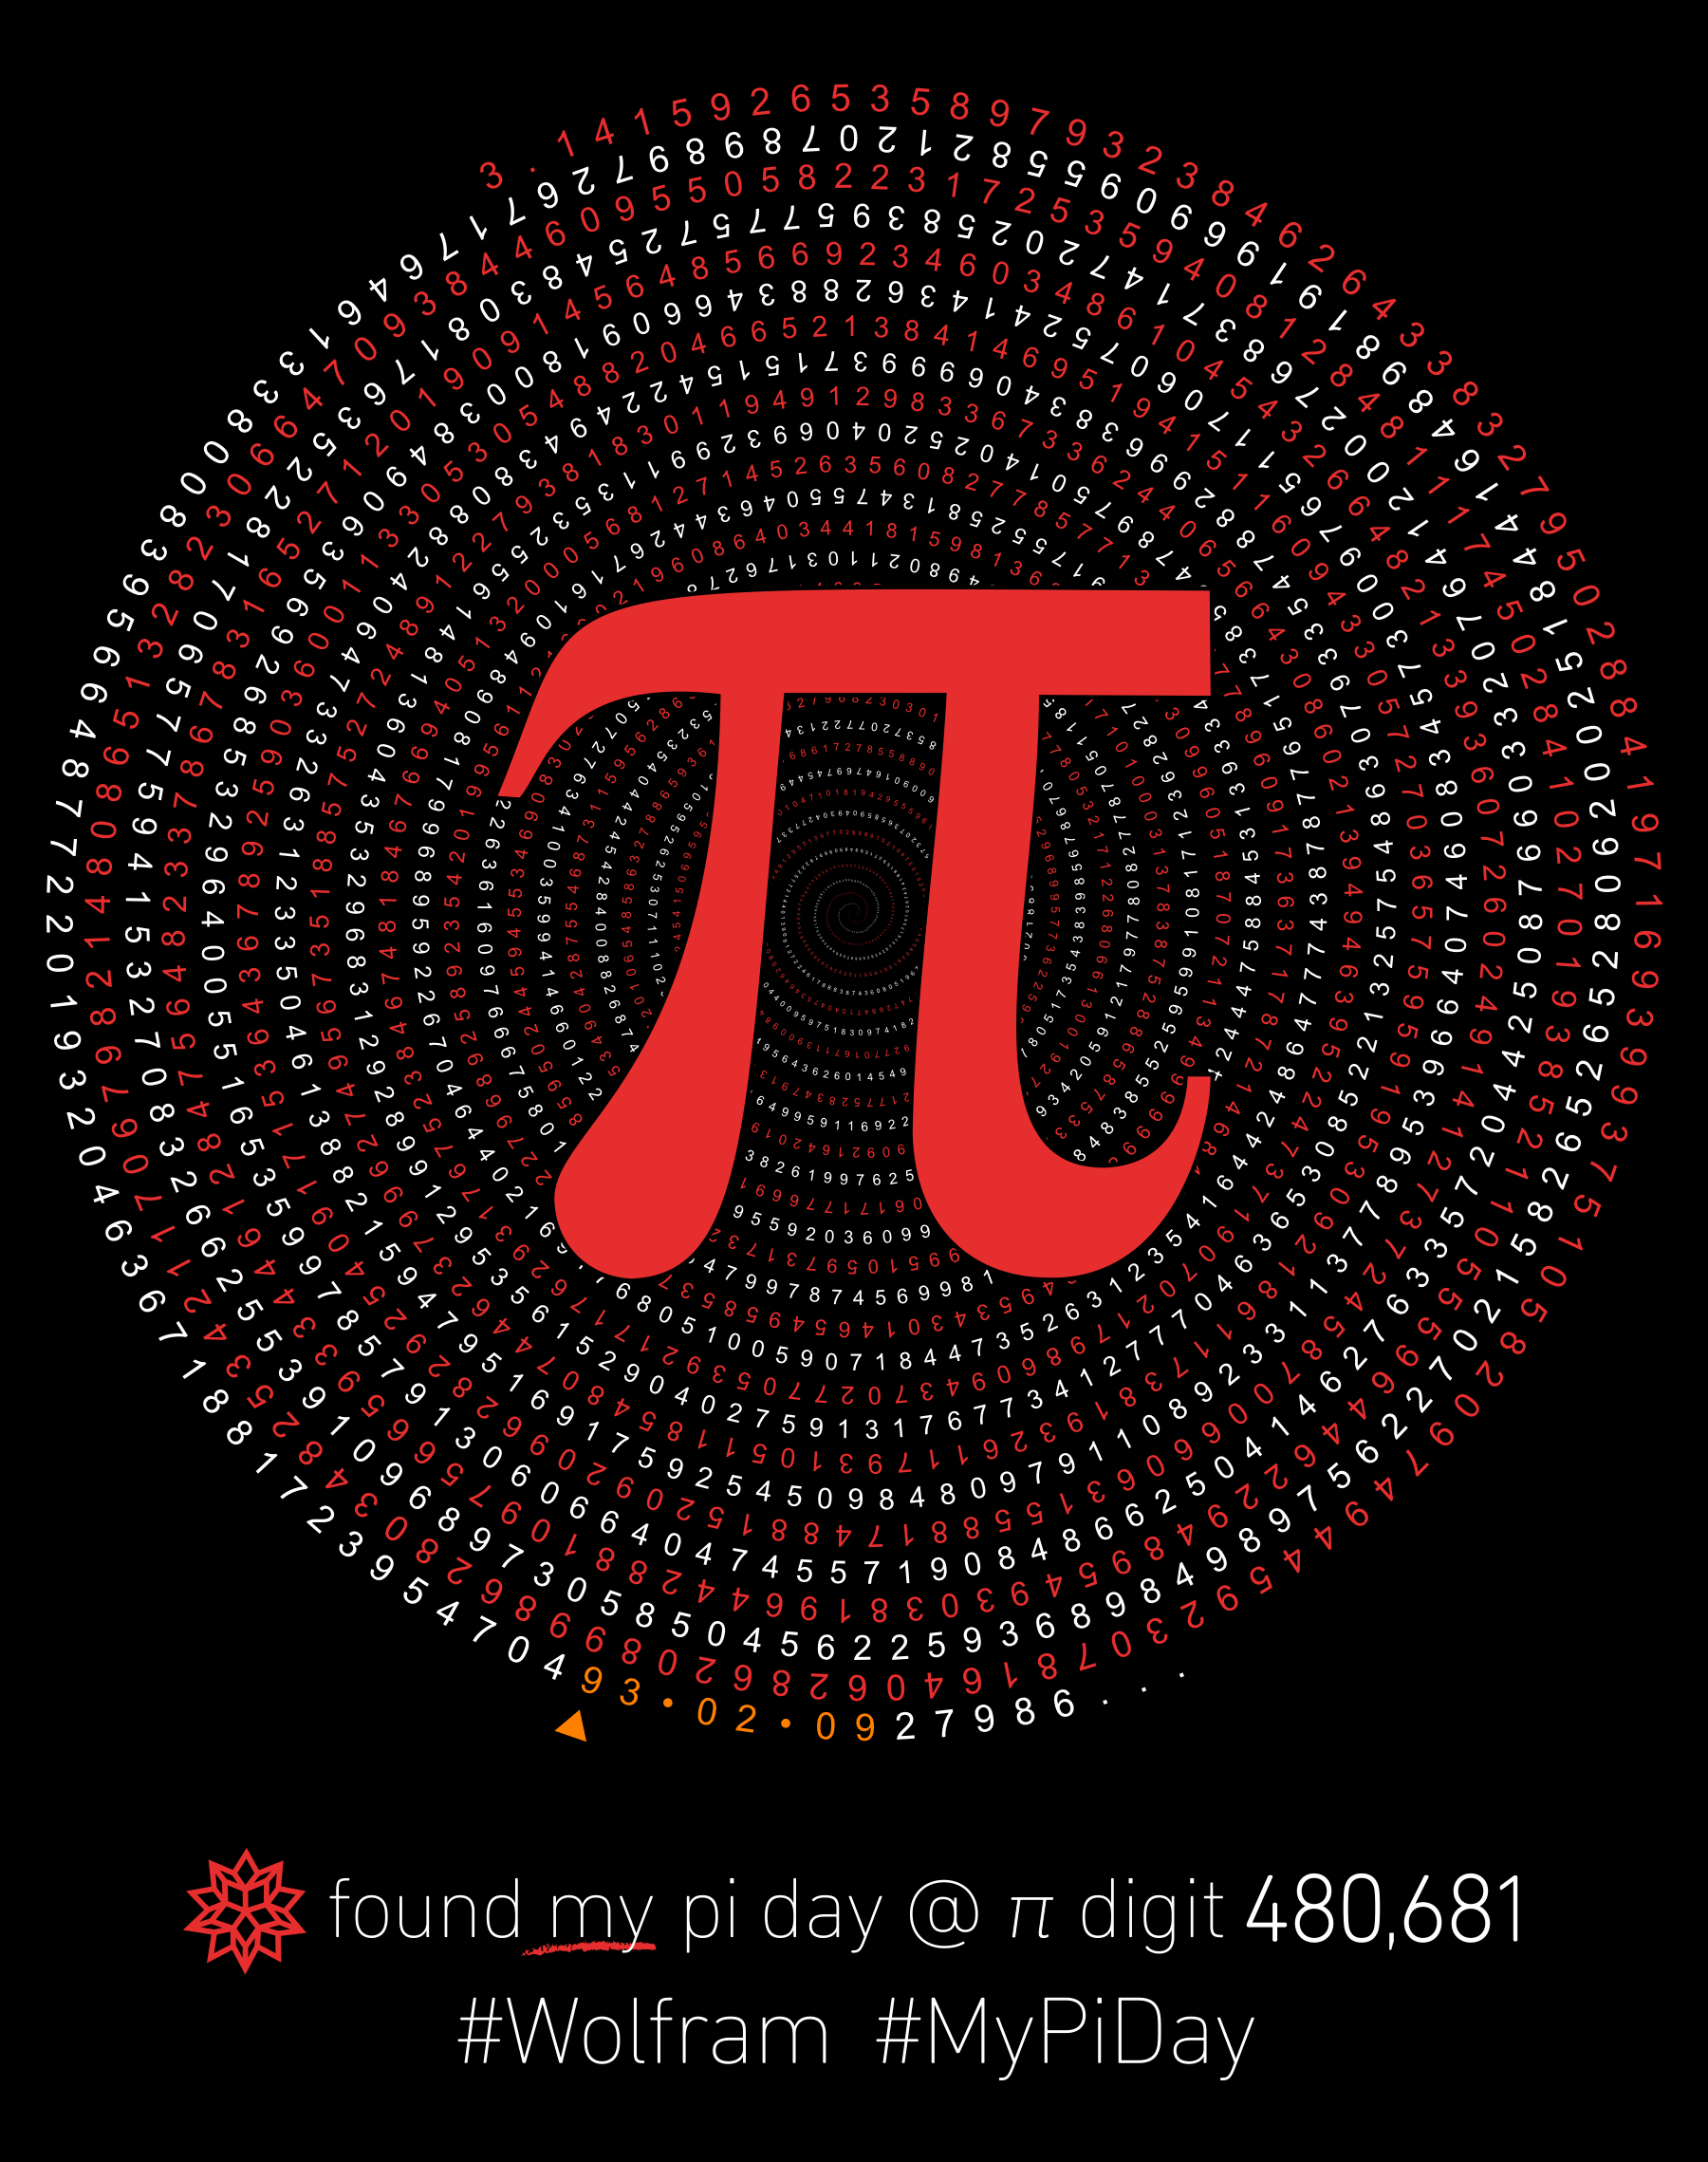 最迷人的数学常数：π——其神奇和美丽无处不在